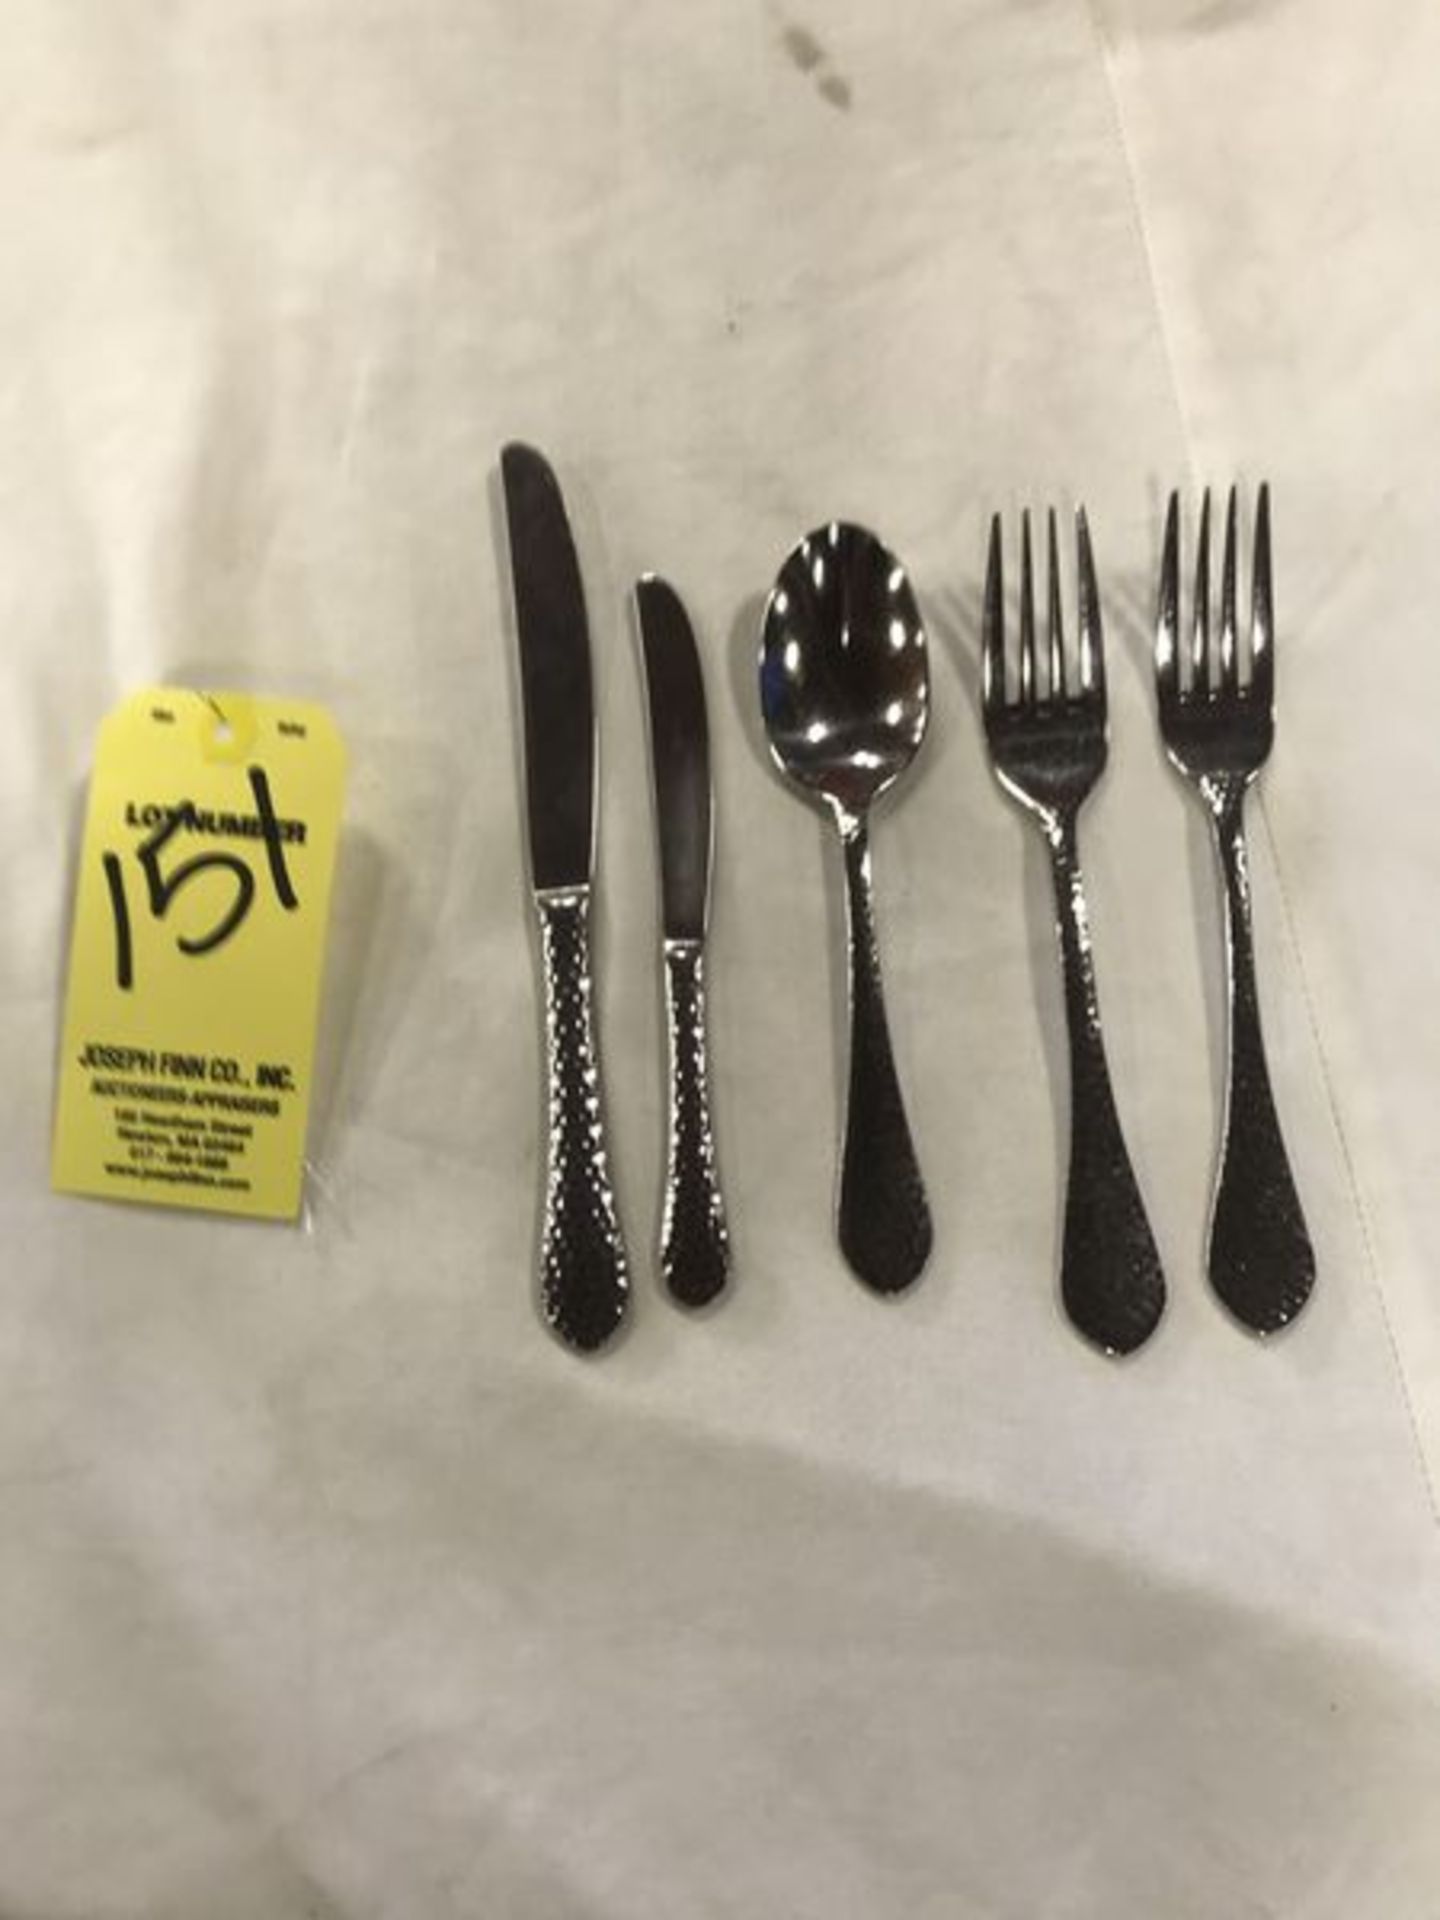 LOT Hammered Flatware Set w/ (825) Dinner Knives, (320) Dinner Forks, (316) Salad Forks, (500) But